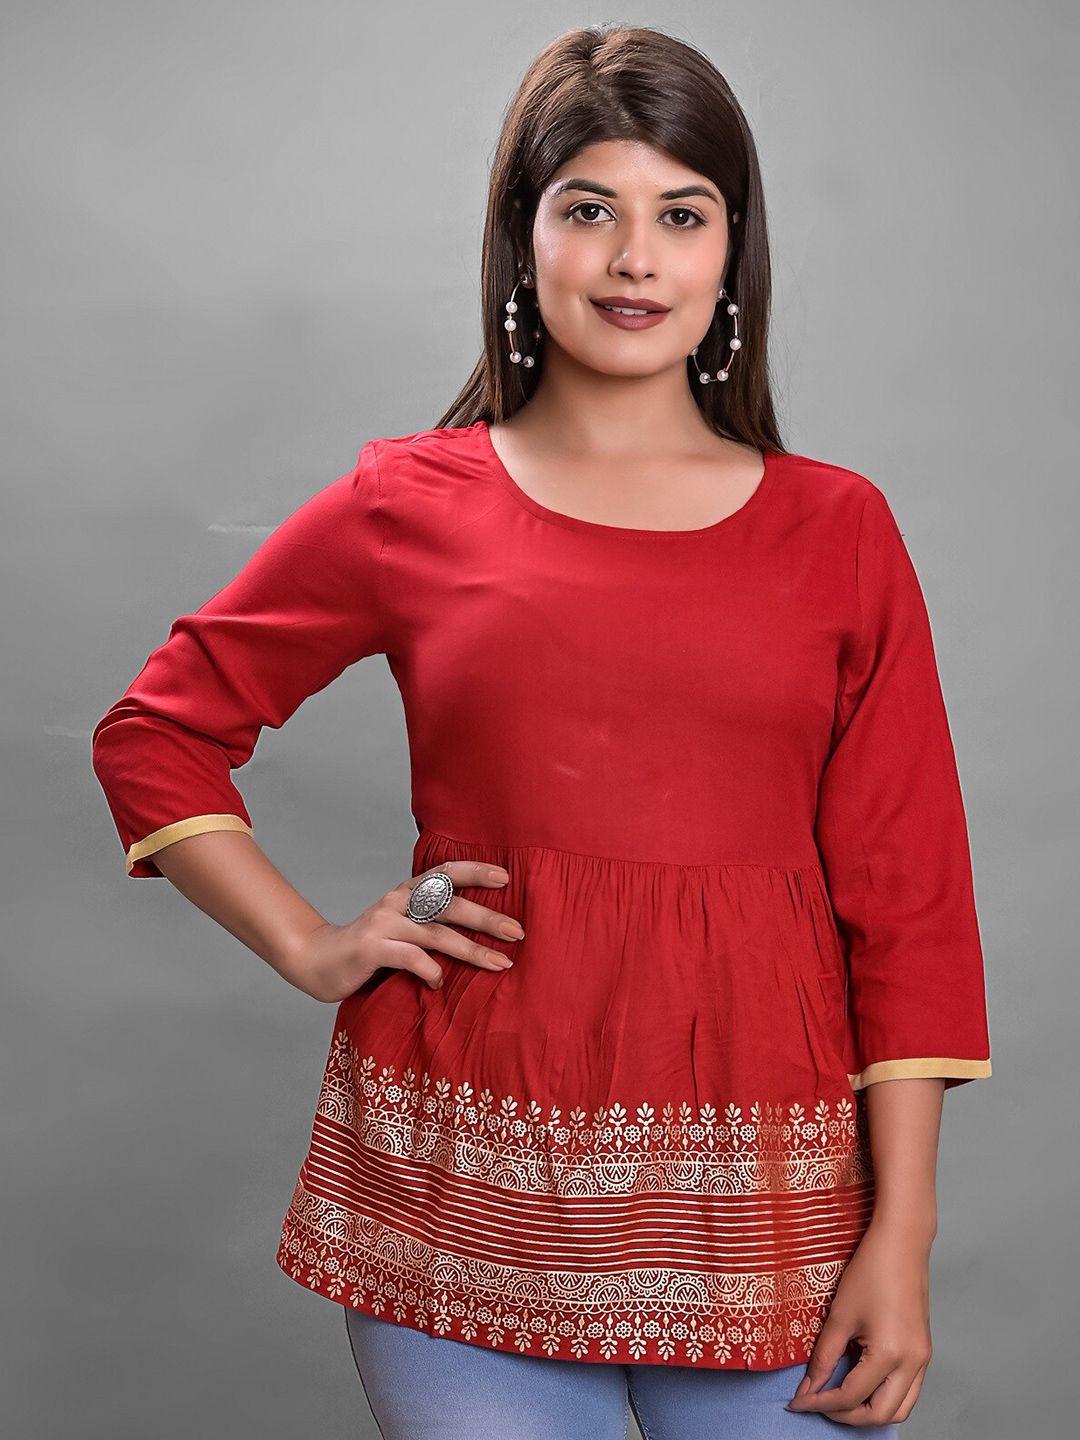 jaipur fashion mode floral printed top